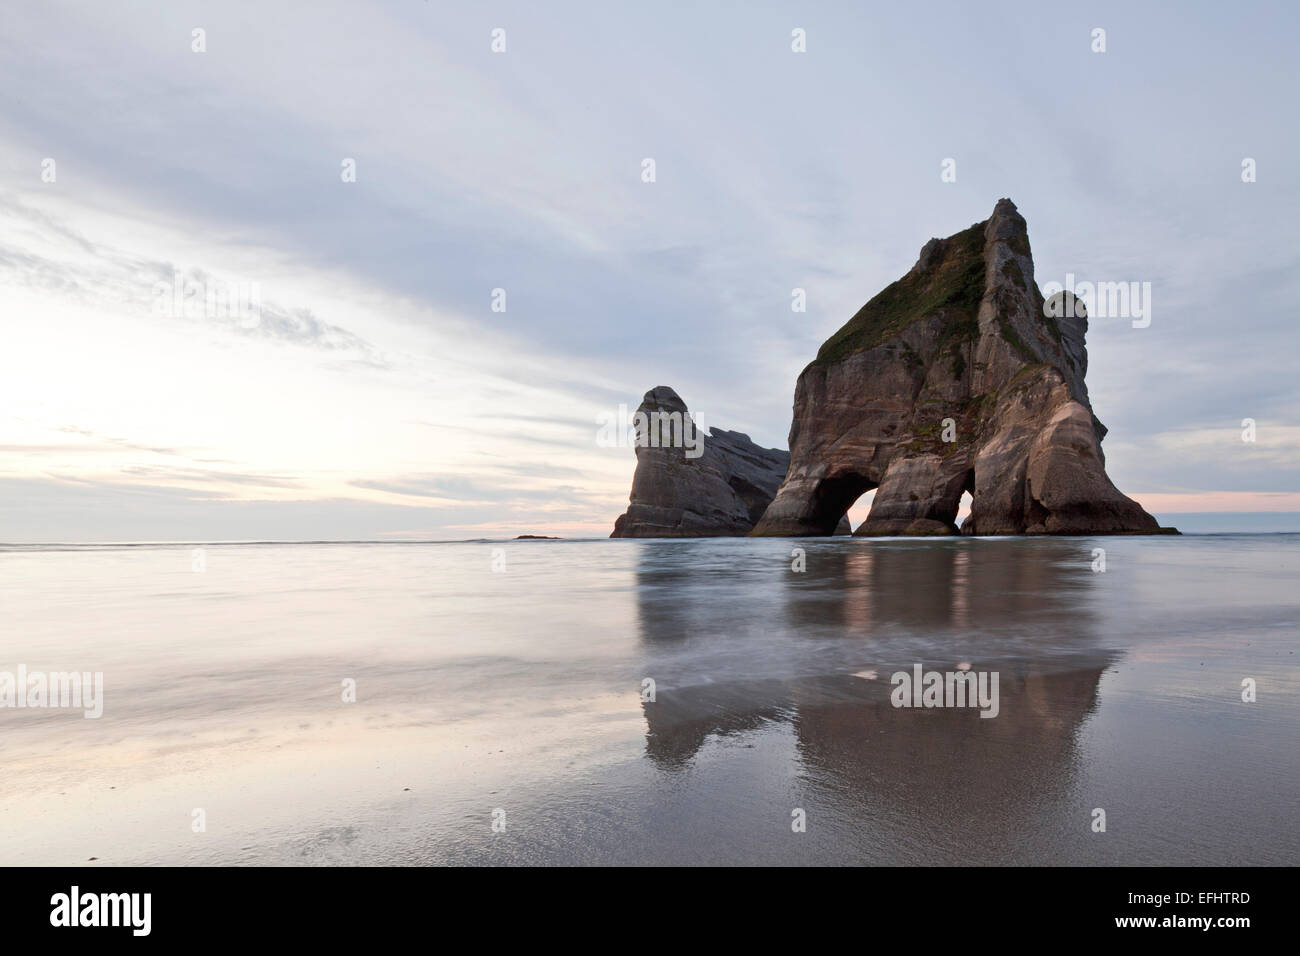 Torbogen Inseln und Strand bei Ebbe, Reflexion im Wasser, Wharariki Beach, Südinsel, Neuseeland Stockfoto